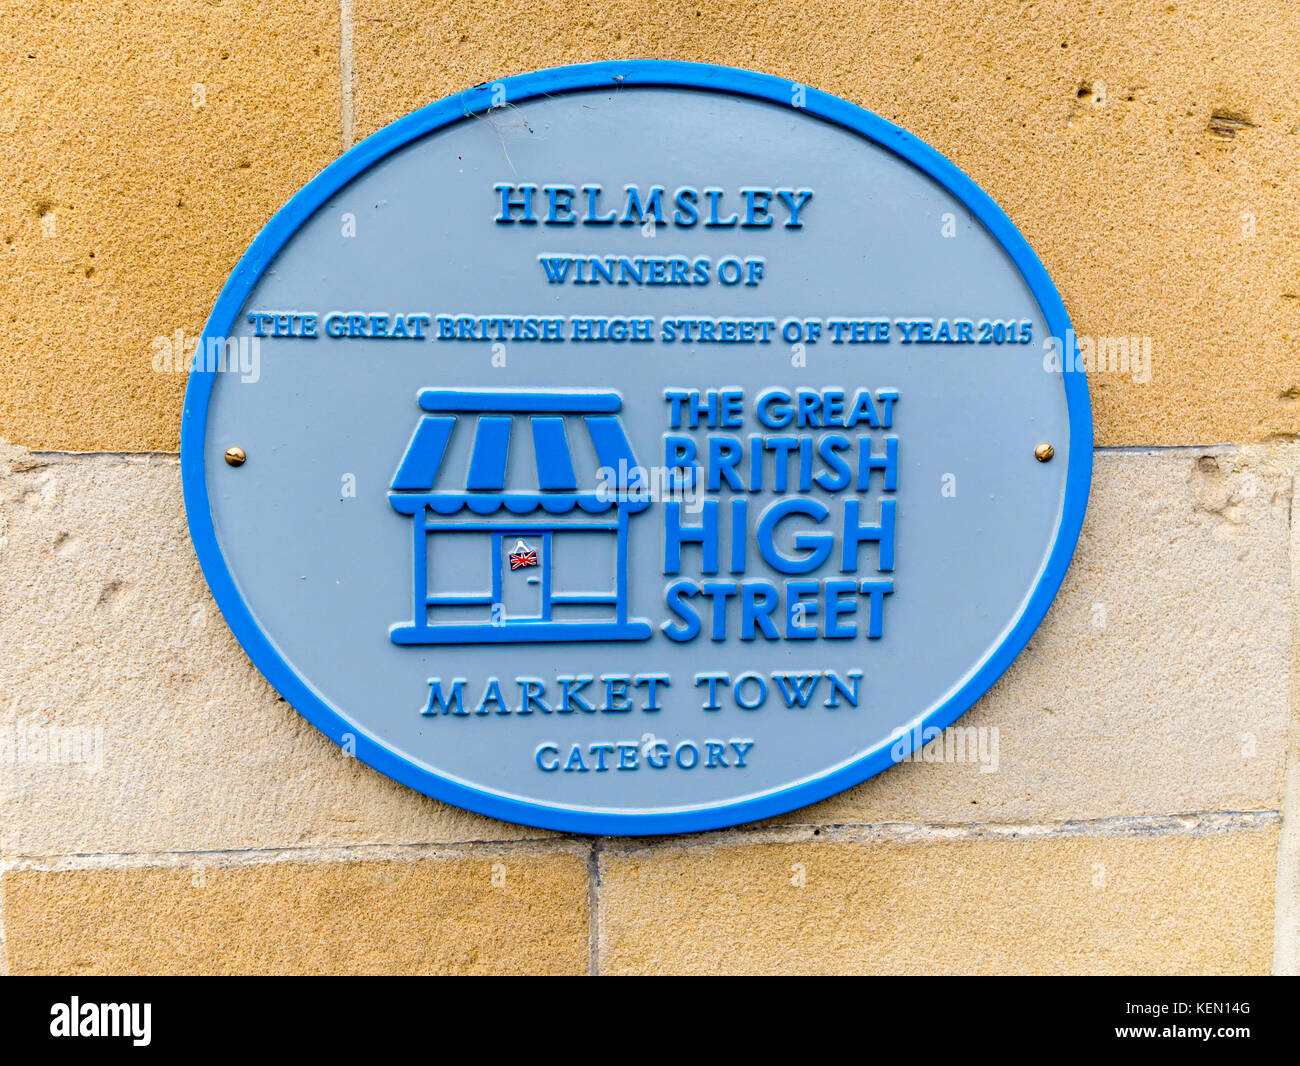 Placa azul para el Helmsley Ganador del Great British High Street del año 2015 Market Town Categoría Foto de stock